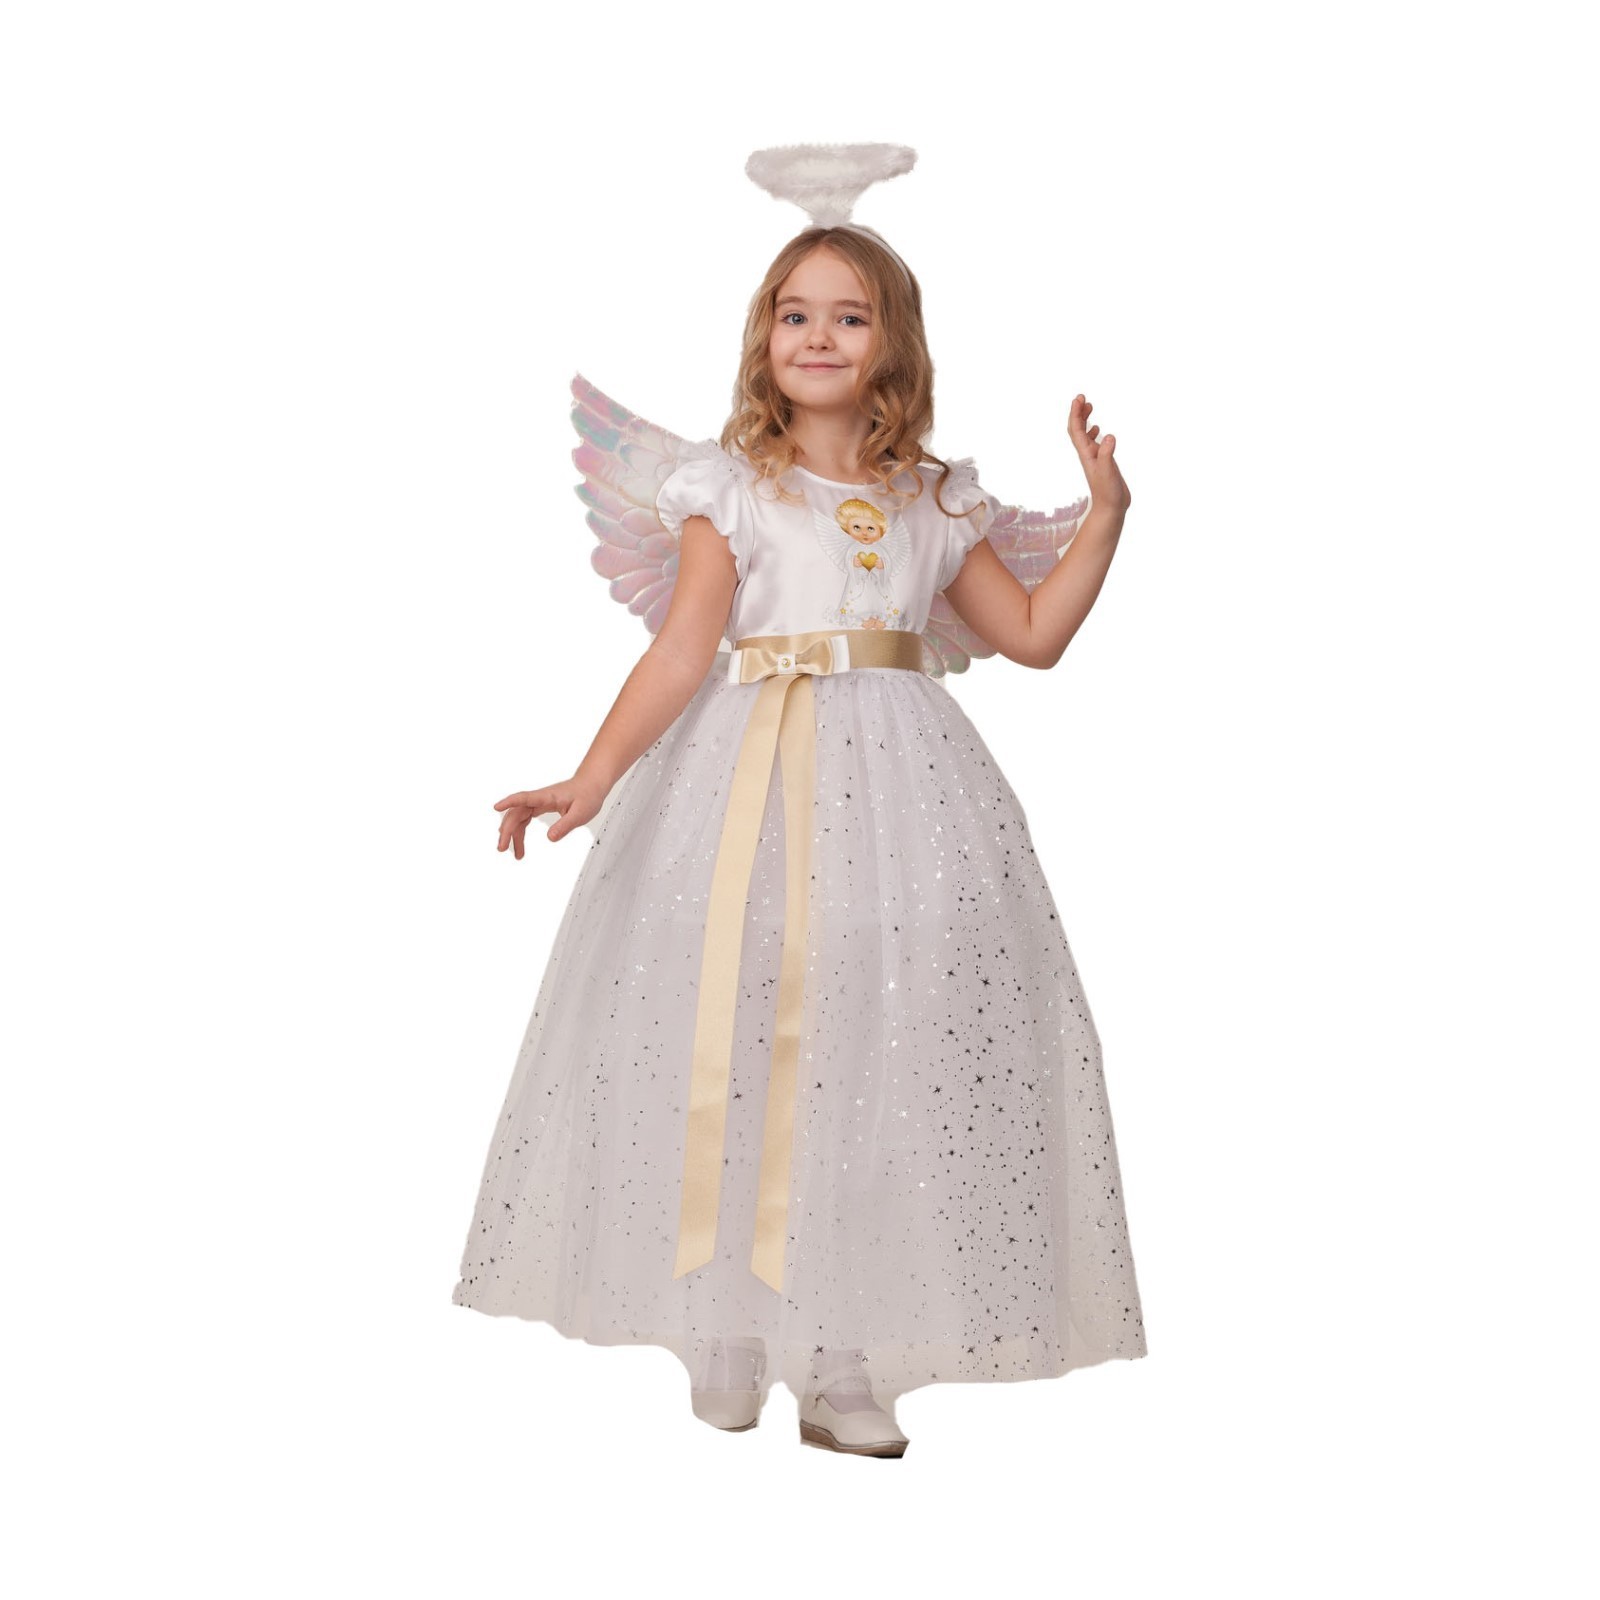 Карнавальный костюм Батик, Ангел, 7483883, рост 110 костюм карнавальный батик единорожка радужка детский р 28 110 см